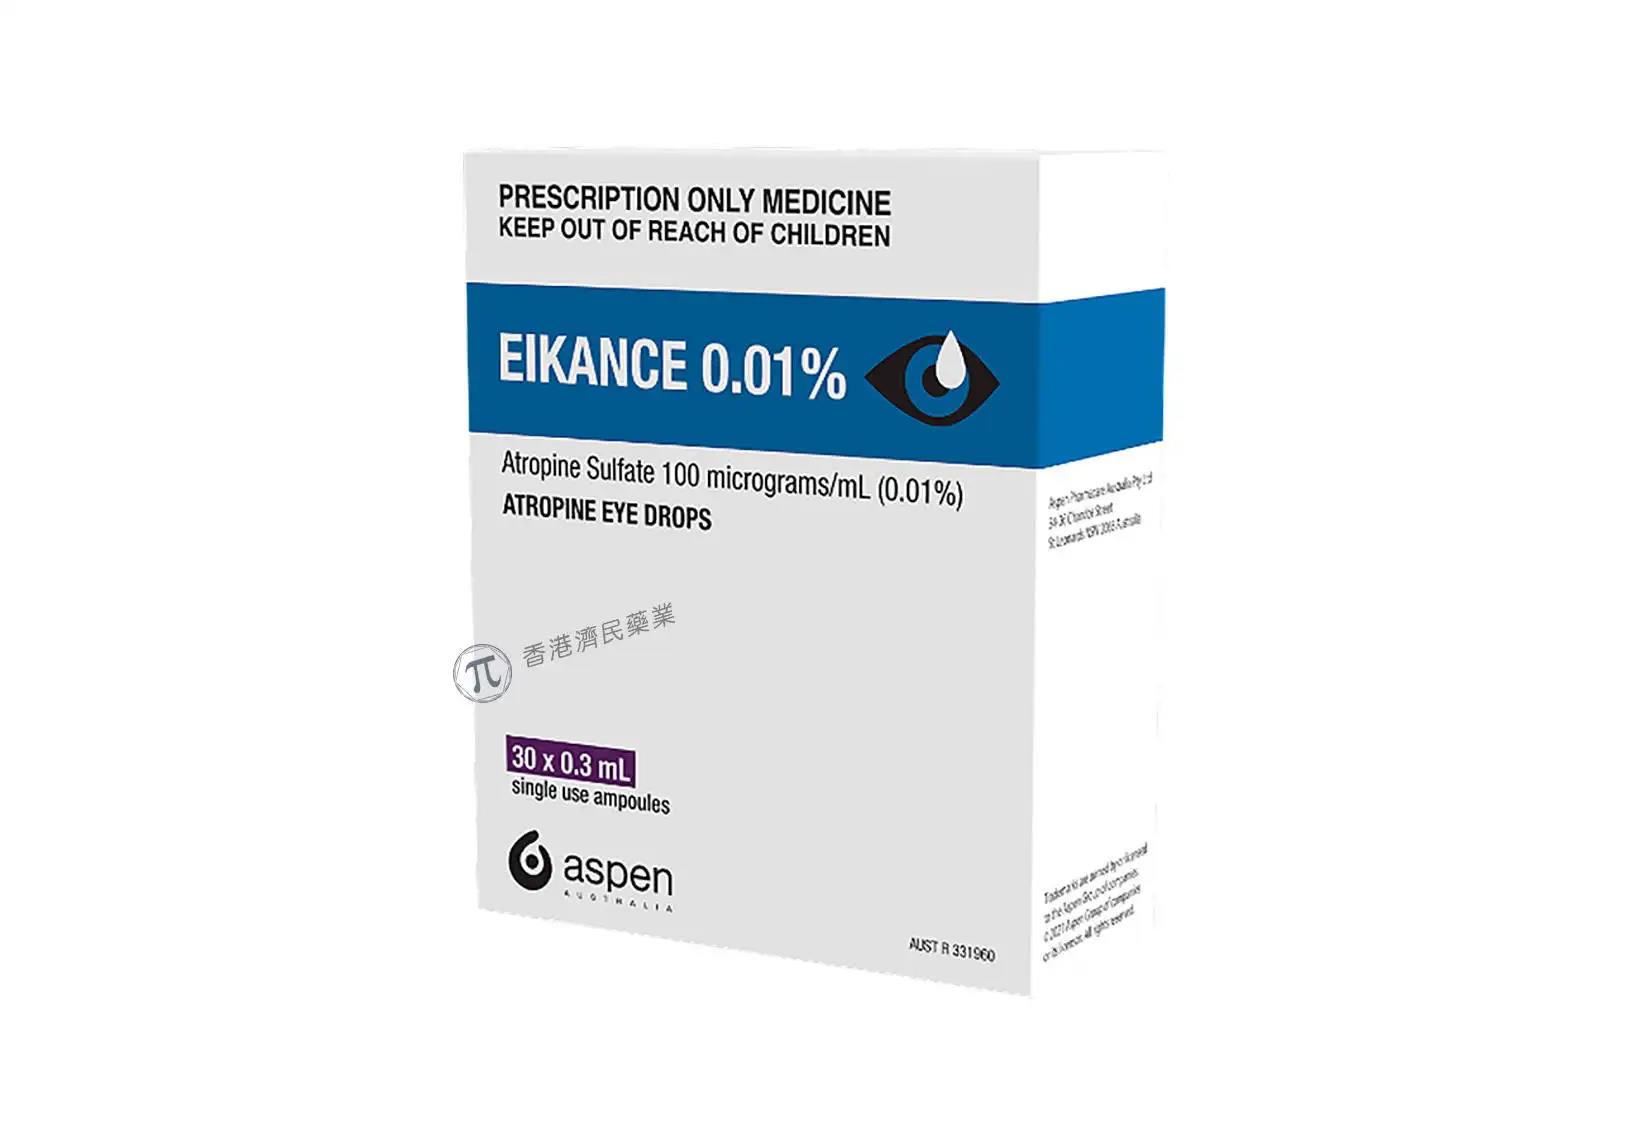 低剂量阿托品EIKANCE 0.01%首次获澳大利亚批准，以减缓近视的发展